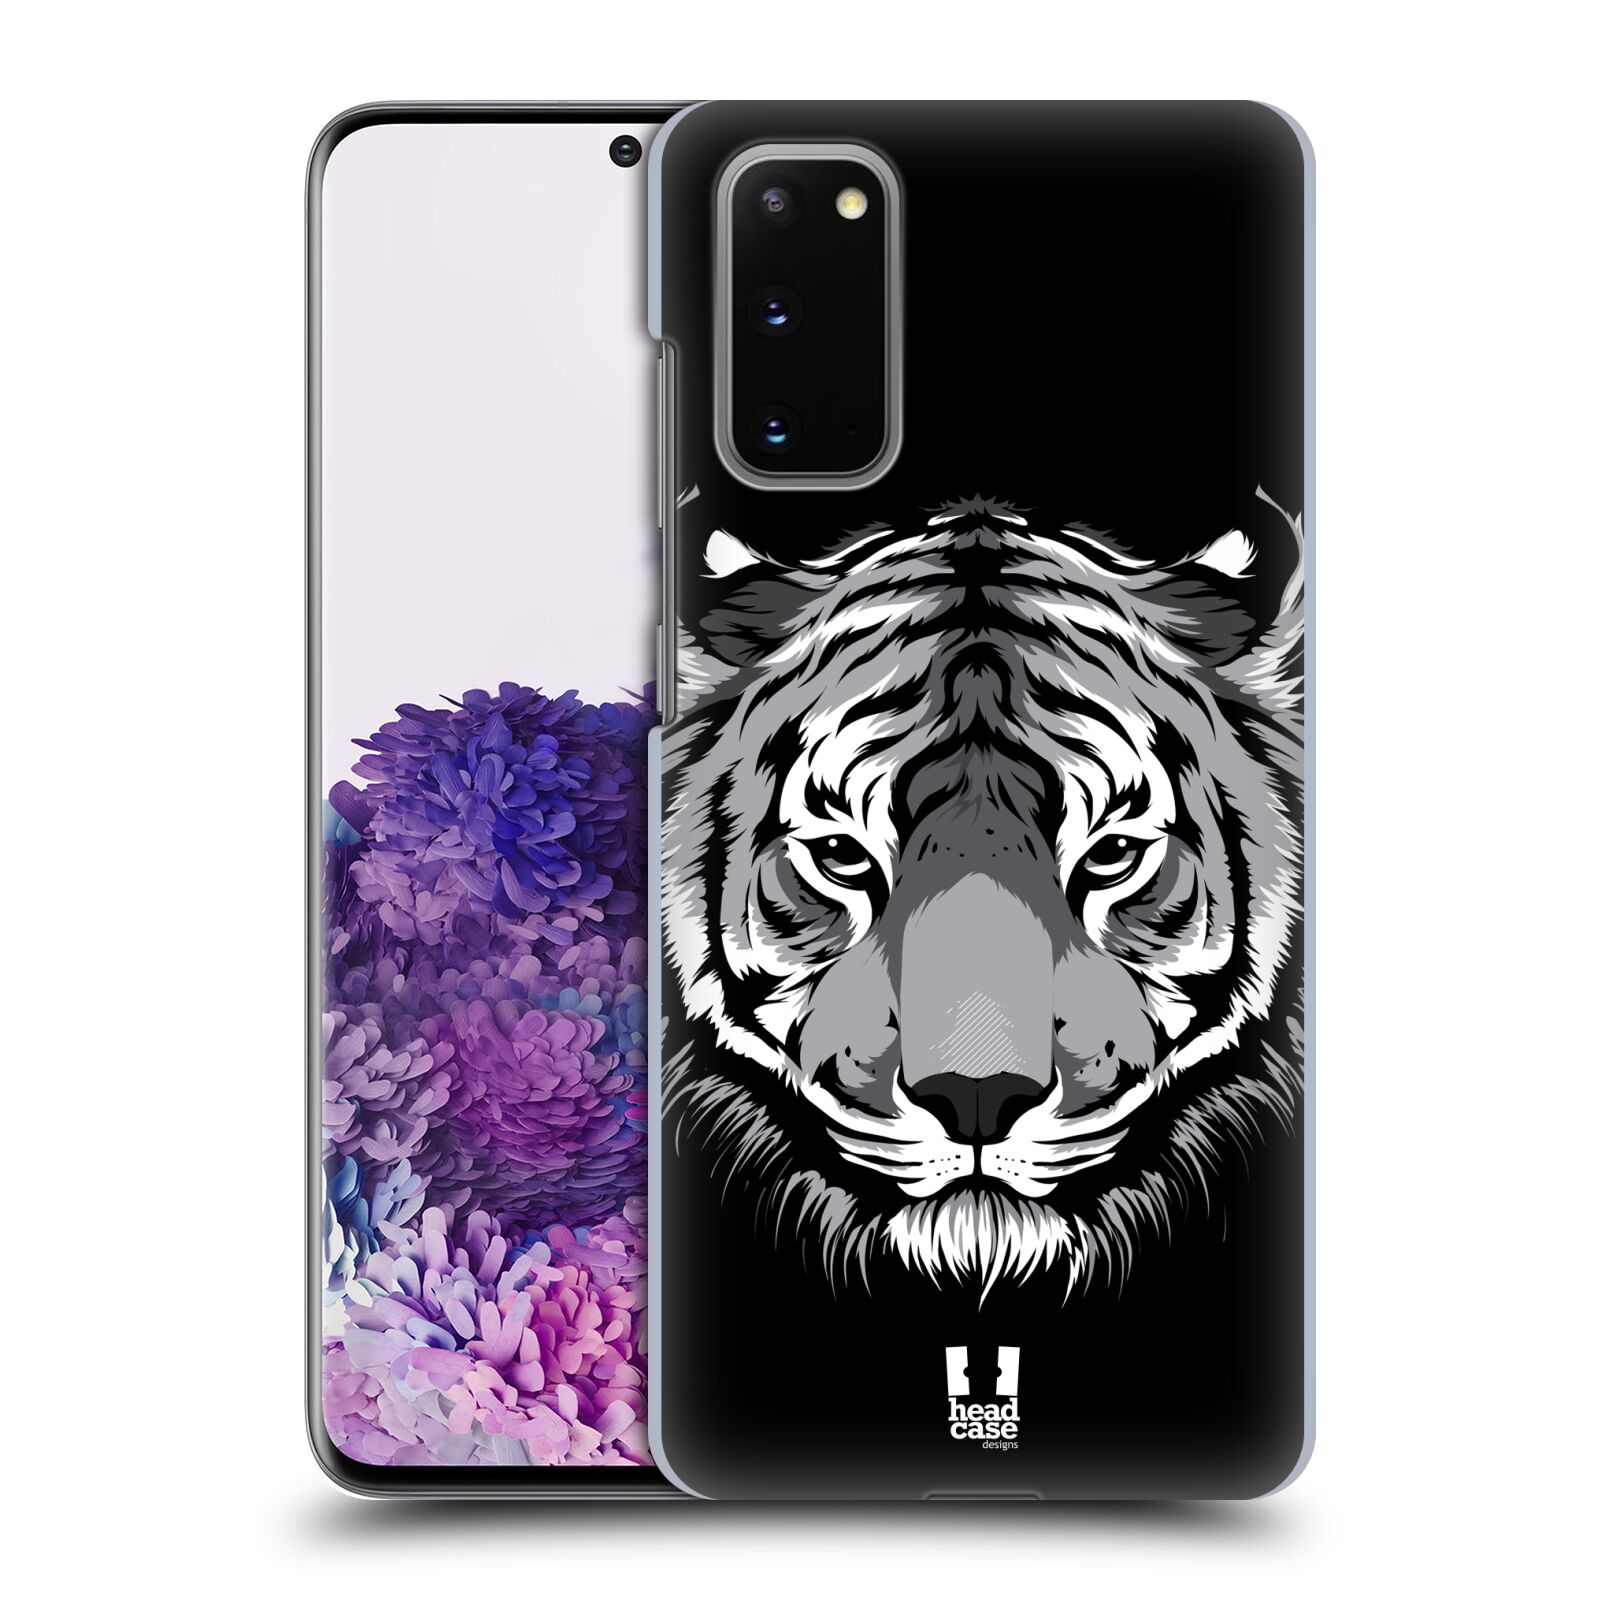 Pouzdro na mobil Samsung Galaxy S20 - HEAD CASE - vzor Zvíře kreslená tvář 2 tygr